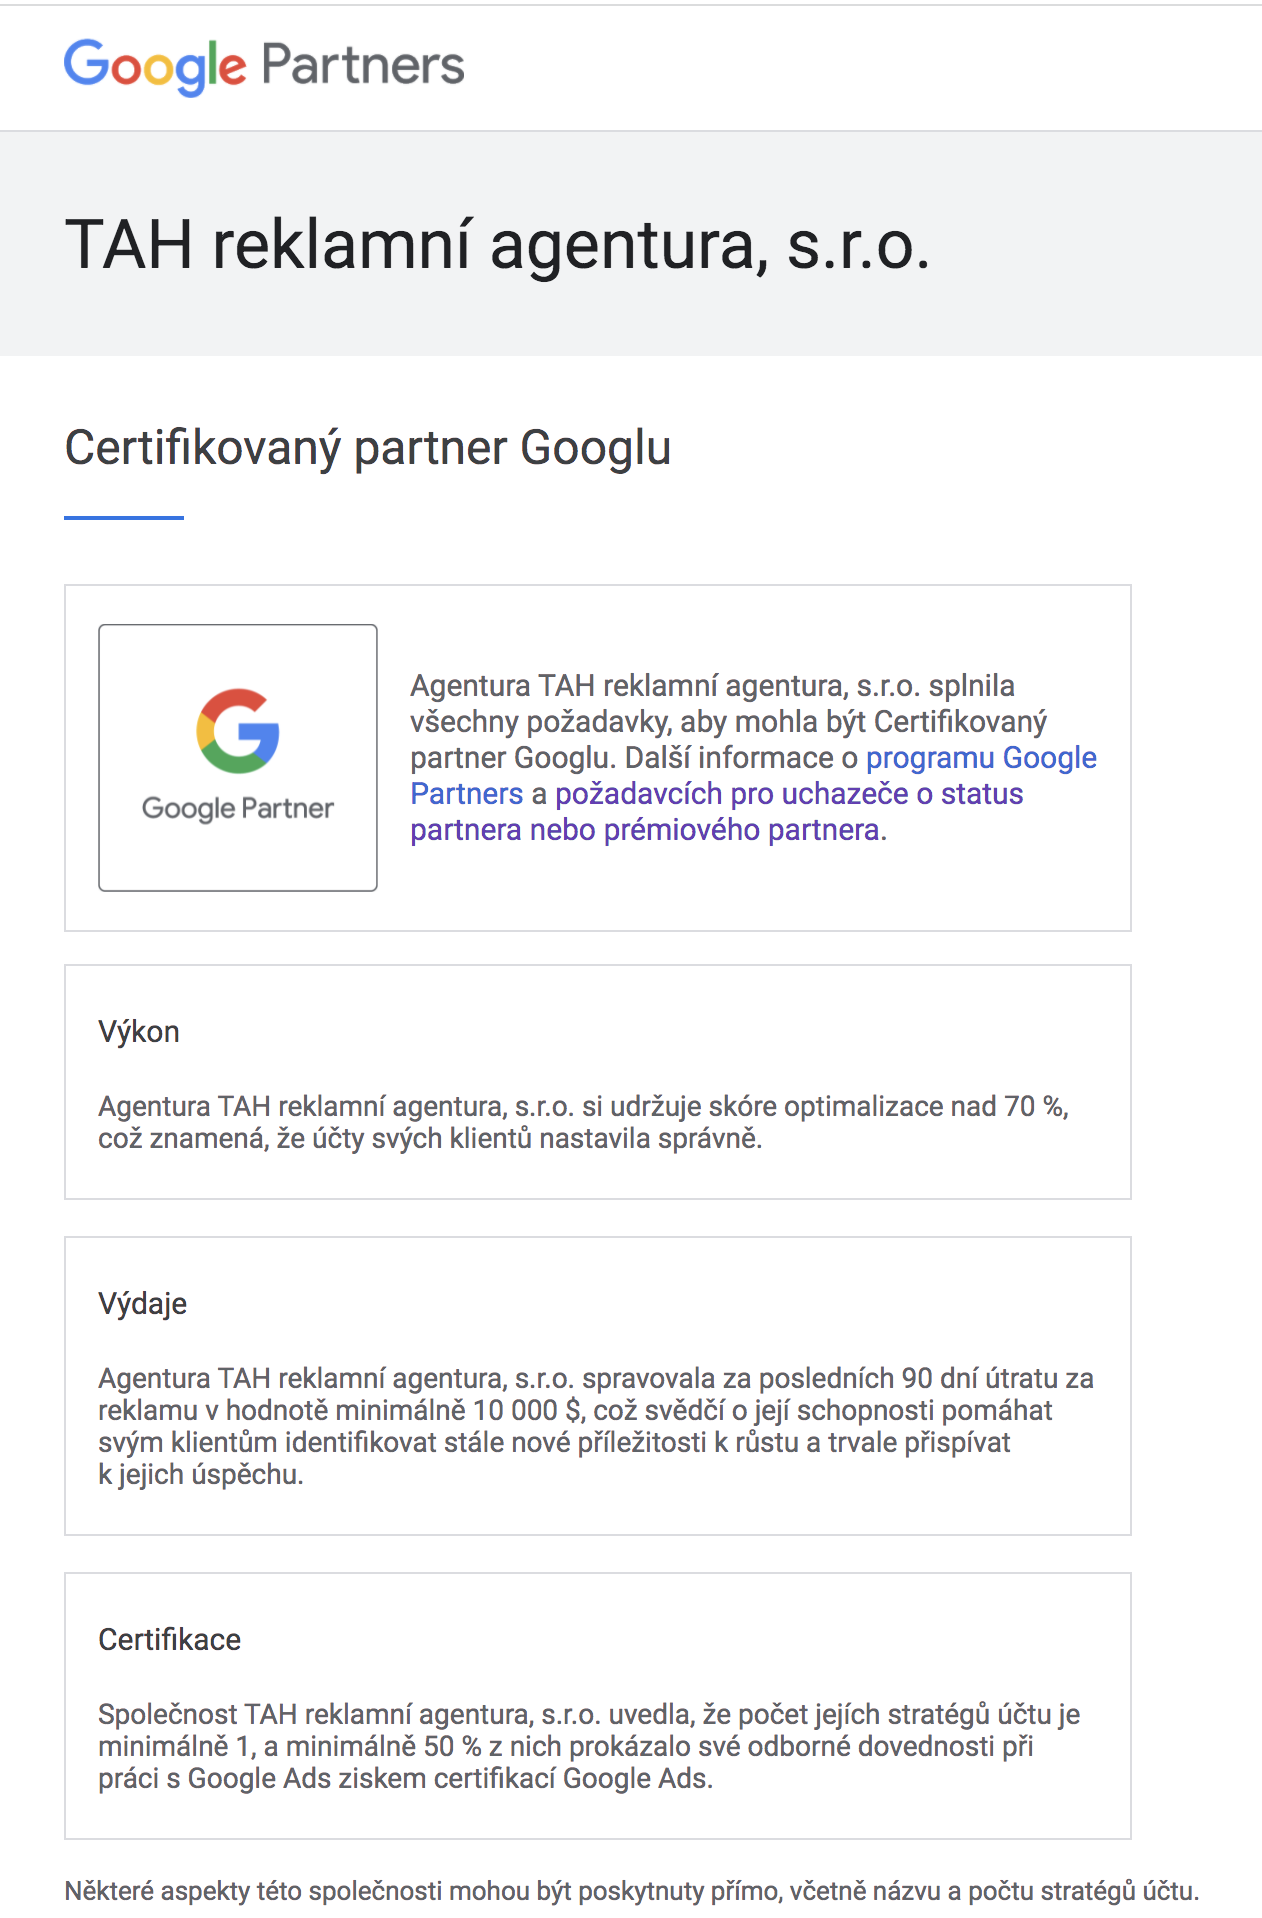 Certifikát Googlu máme v kapse